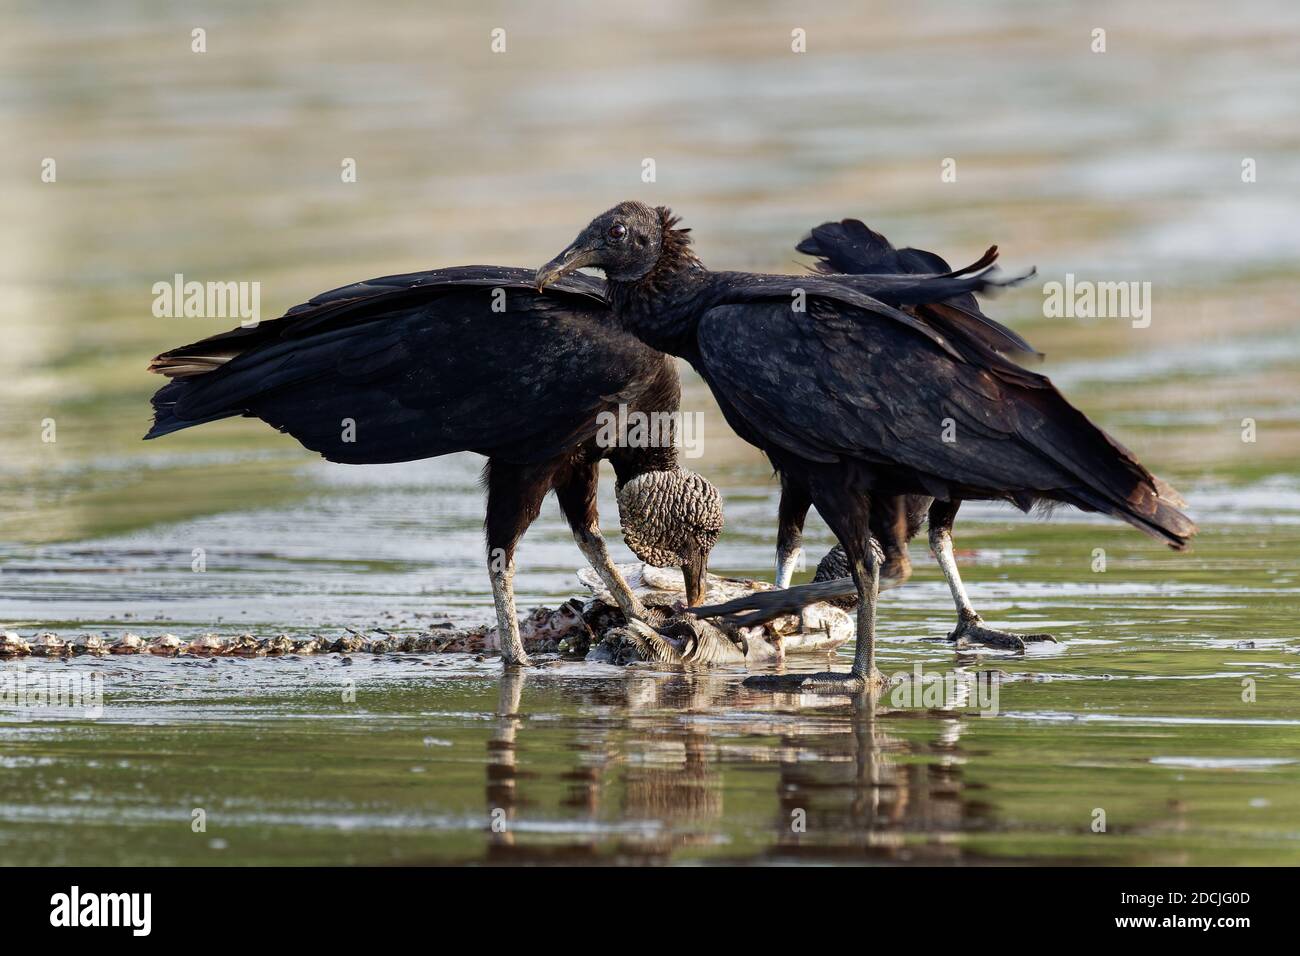 Schwarzgeier - Coragyps atratus oder amerikanischer Schwarzgeier, mehrere Fressvögel in der Familie der New World Geier, die sich am Kadaver oder Kadaver ernähren Stockfoto